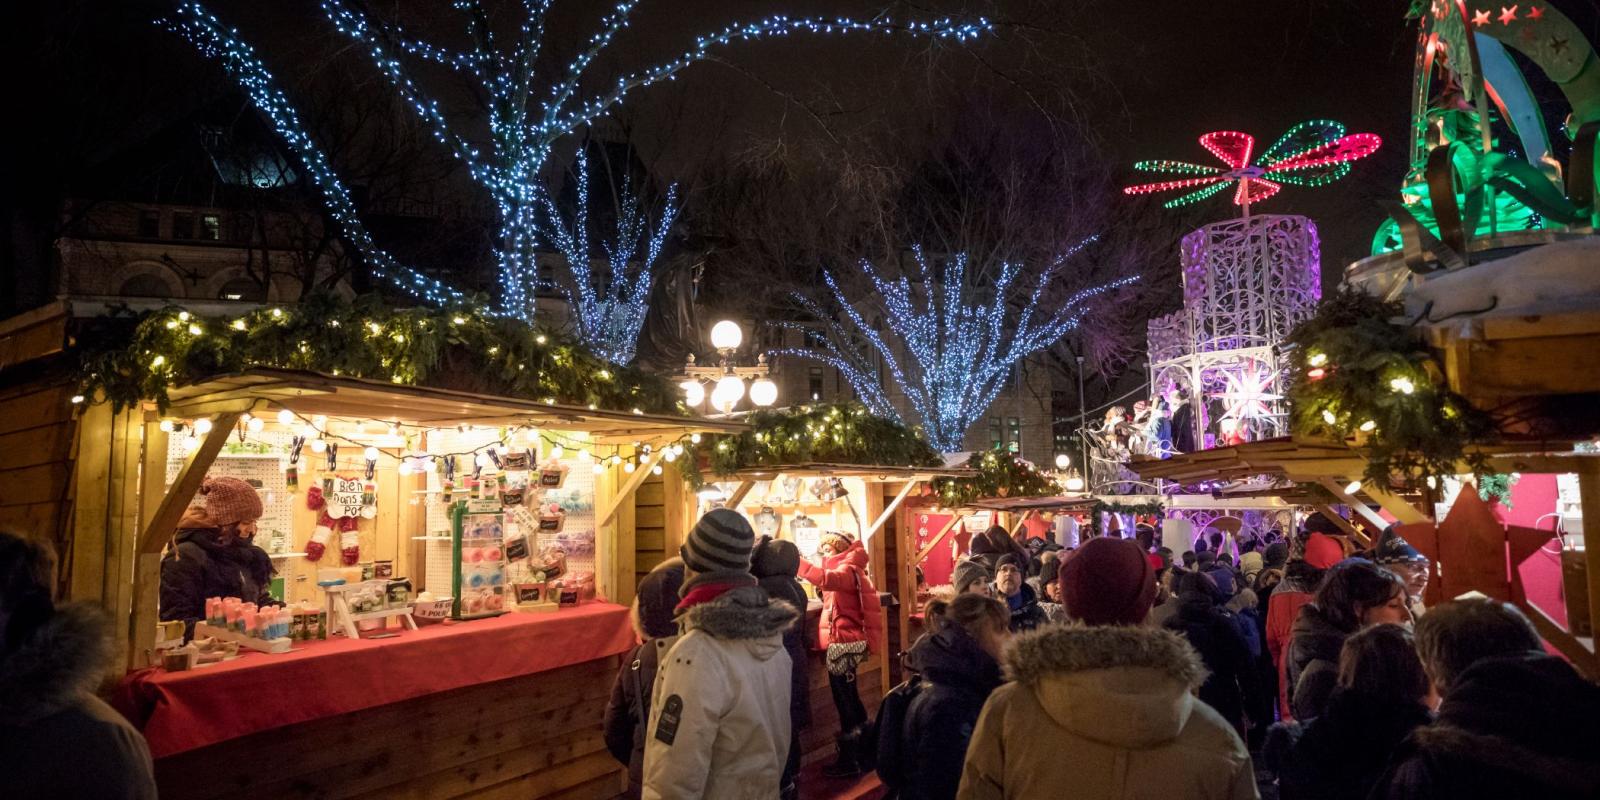 German Christmas Market Events in Québec City